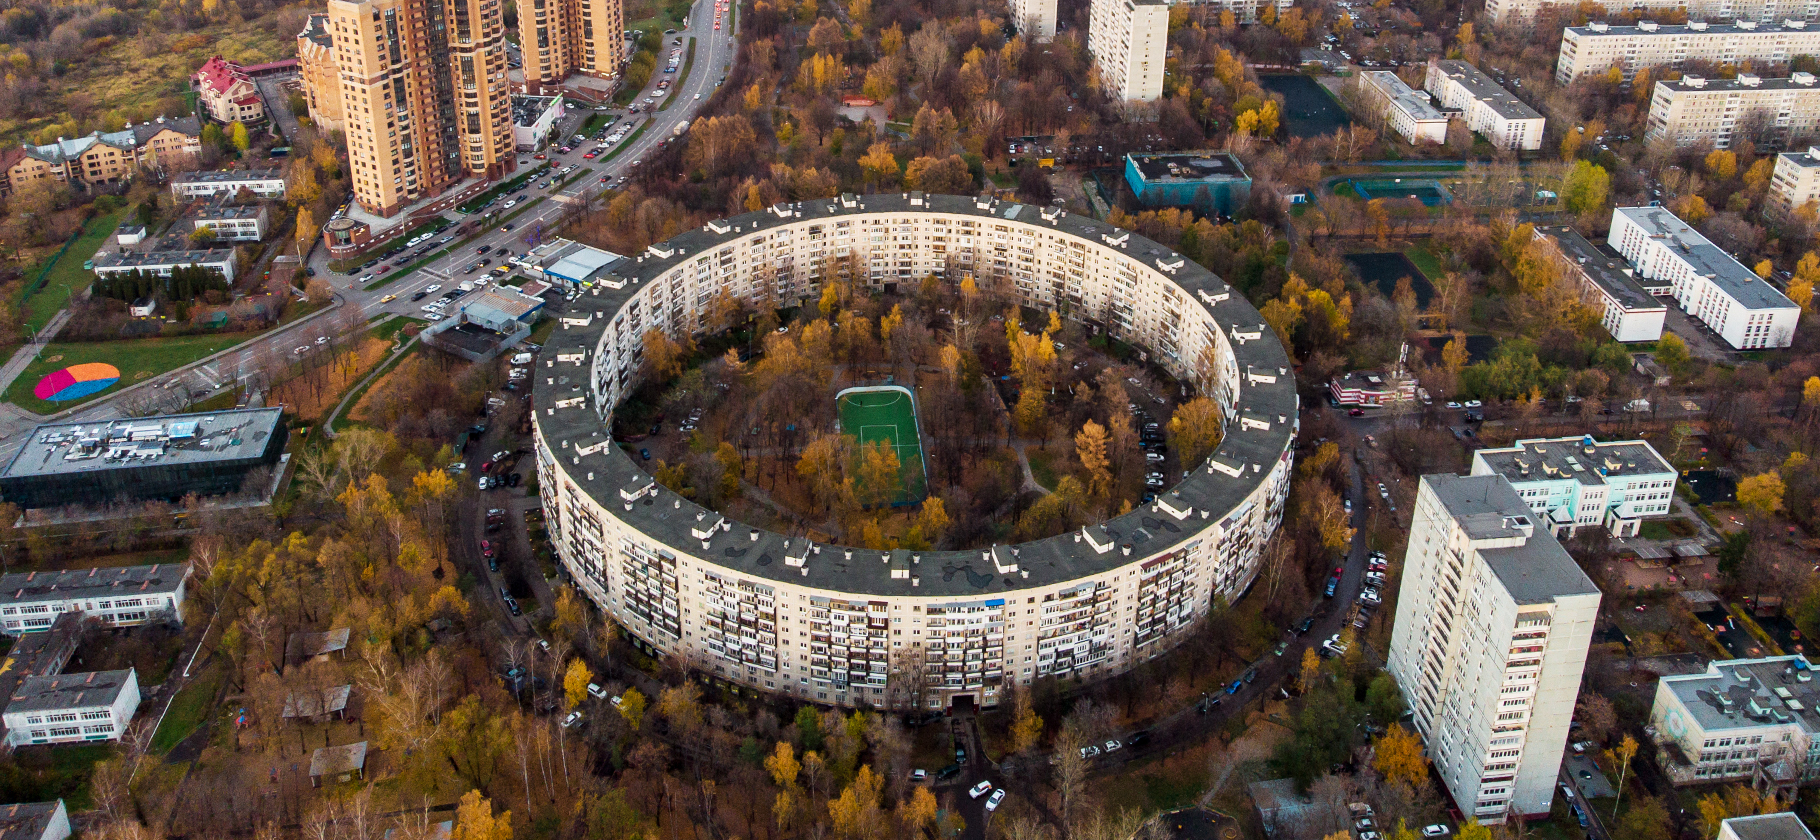 Как живется в районе Очаково-Матвеевское в Москве